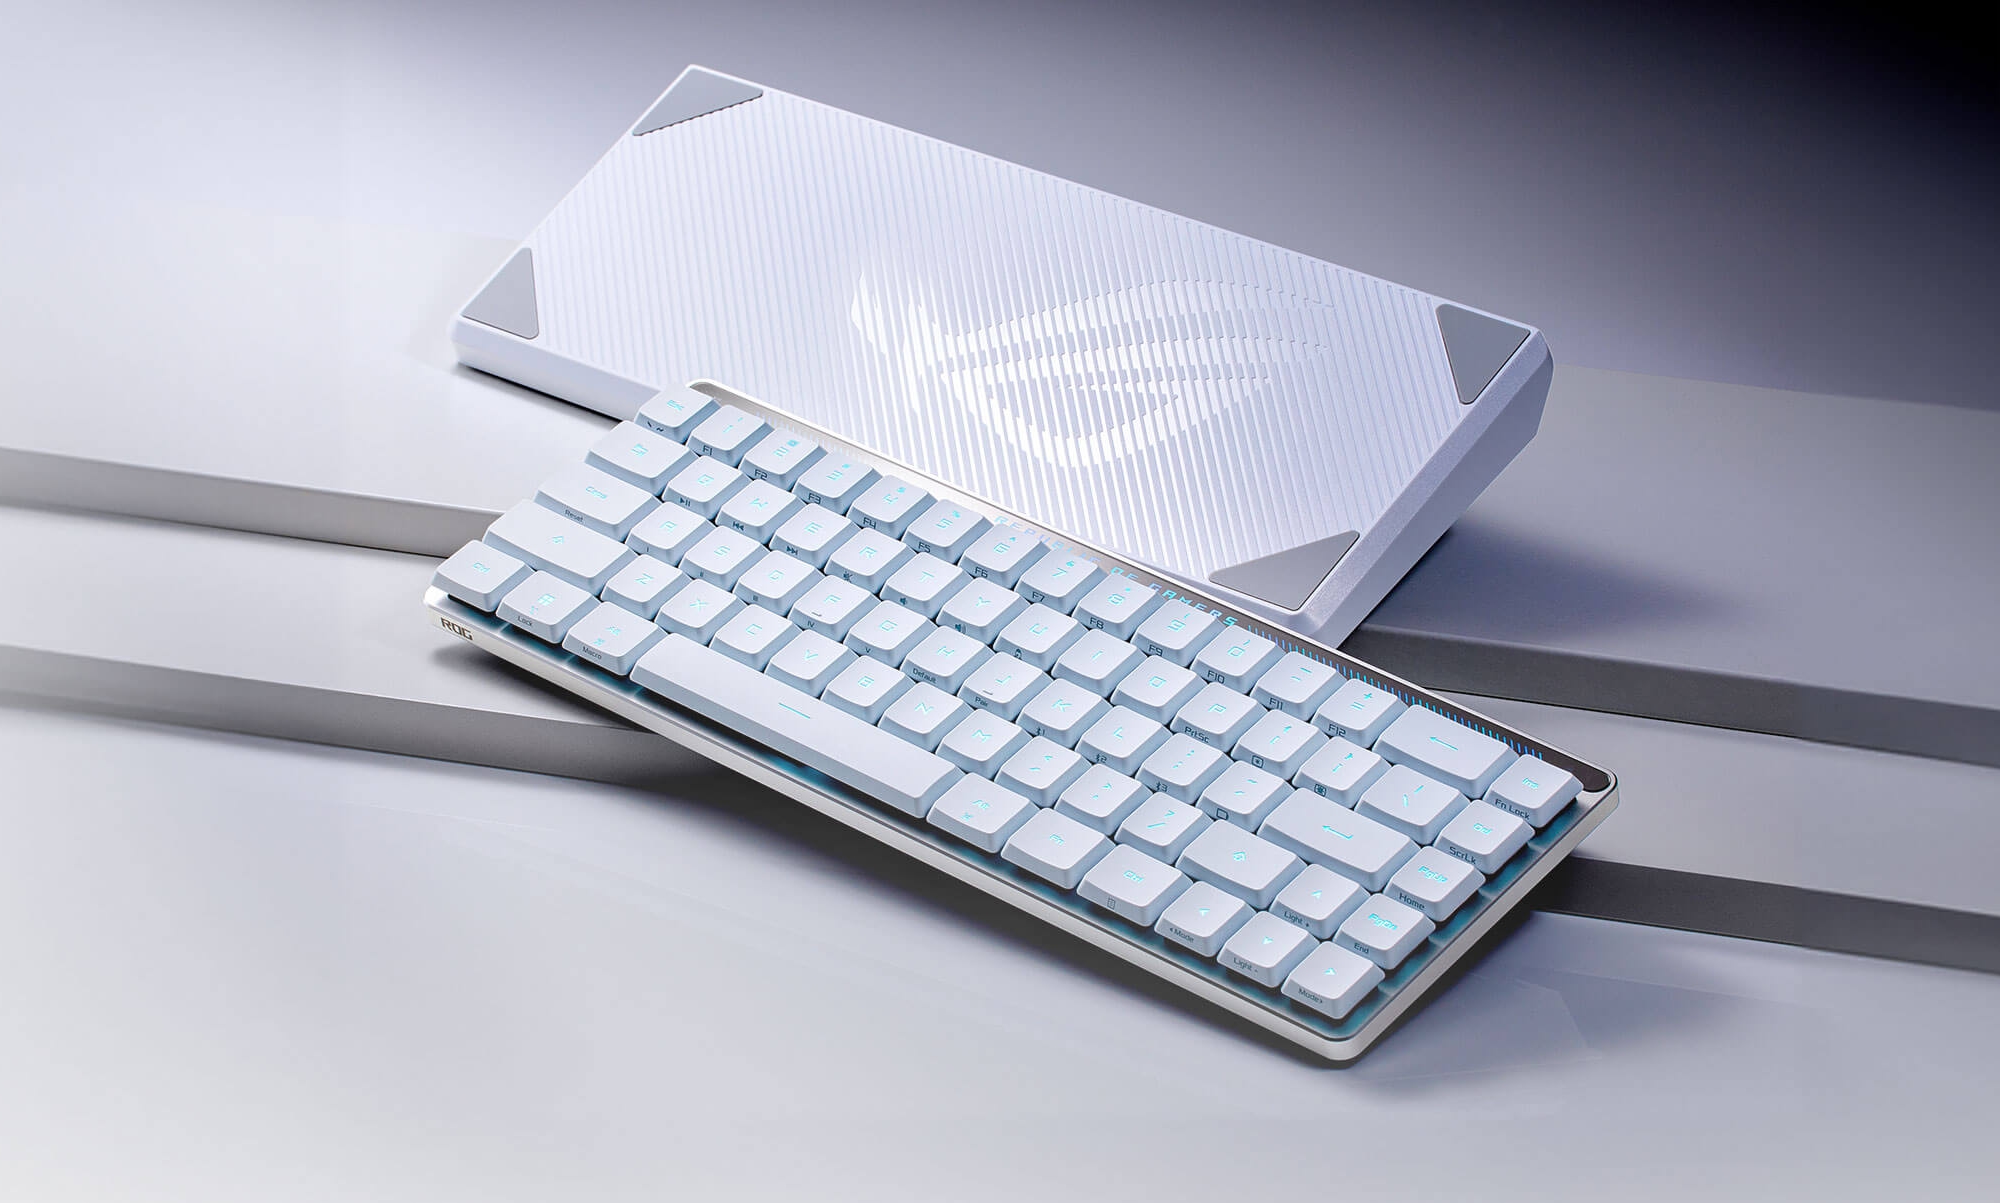 ASUS ROG Falchion RX Gaming Keyboard debuterer på det globale marked